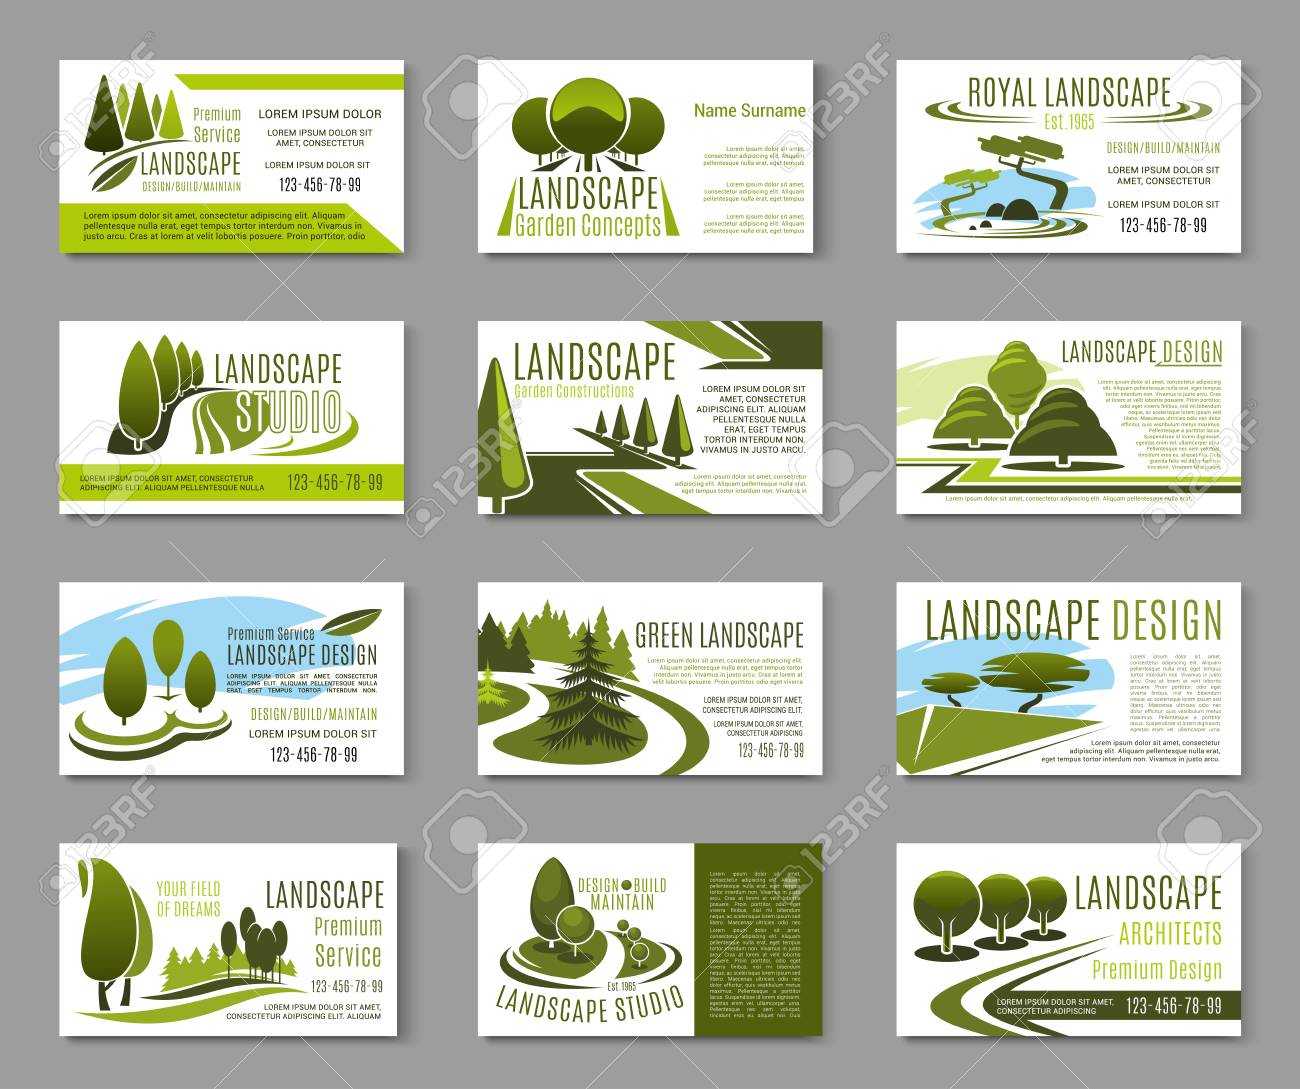 Landscape Design Studio Business Card Template Intended For Landscaping Business Card Template